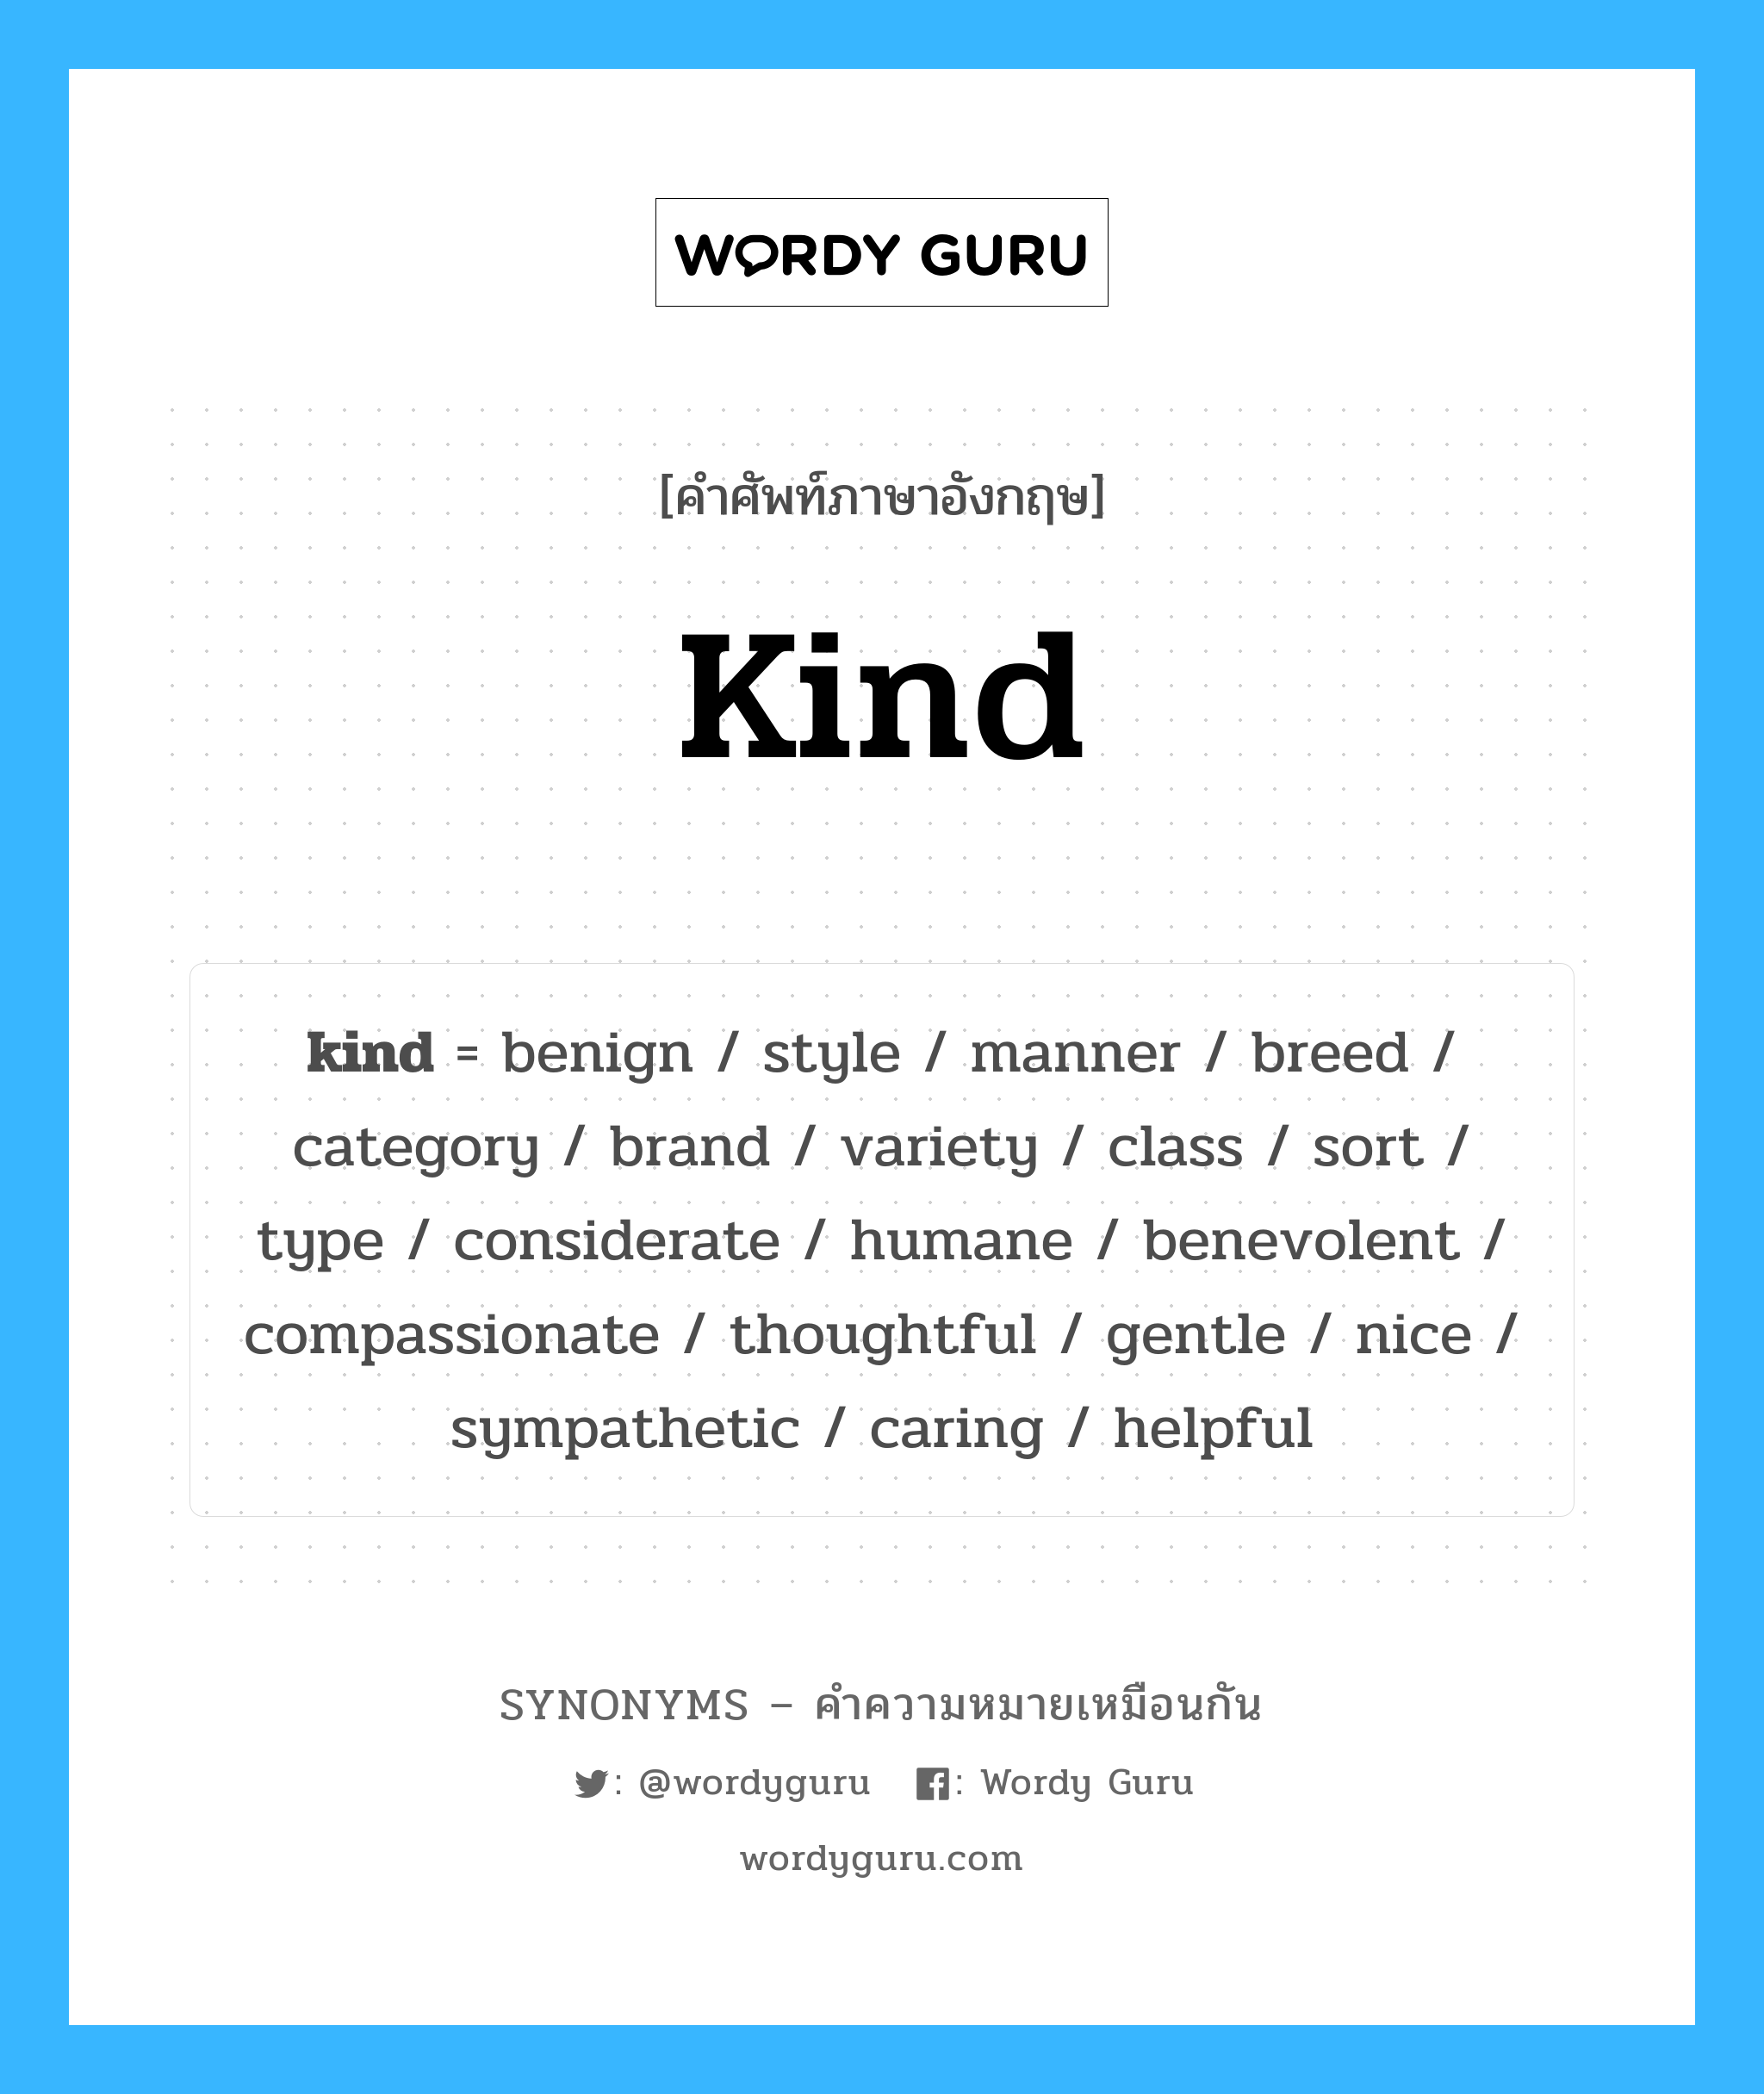 nice เป็นหนึ่งใน kind และมีคำอื่น ๆ อีกดังนี้, คำศัพท์ภาษาอังกฤษ nice ความหมายคล้ายกันกับ kind แปลว่า ดี หมวด kind